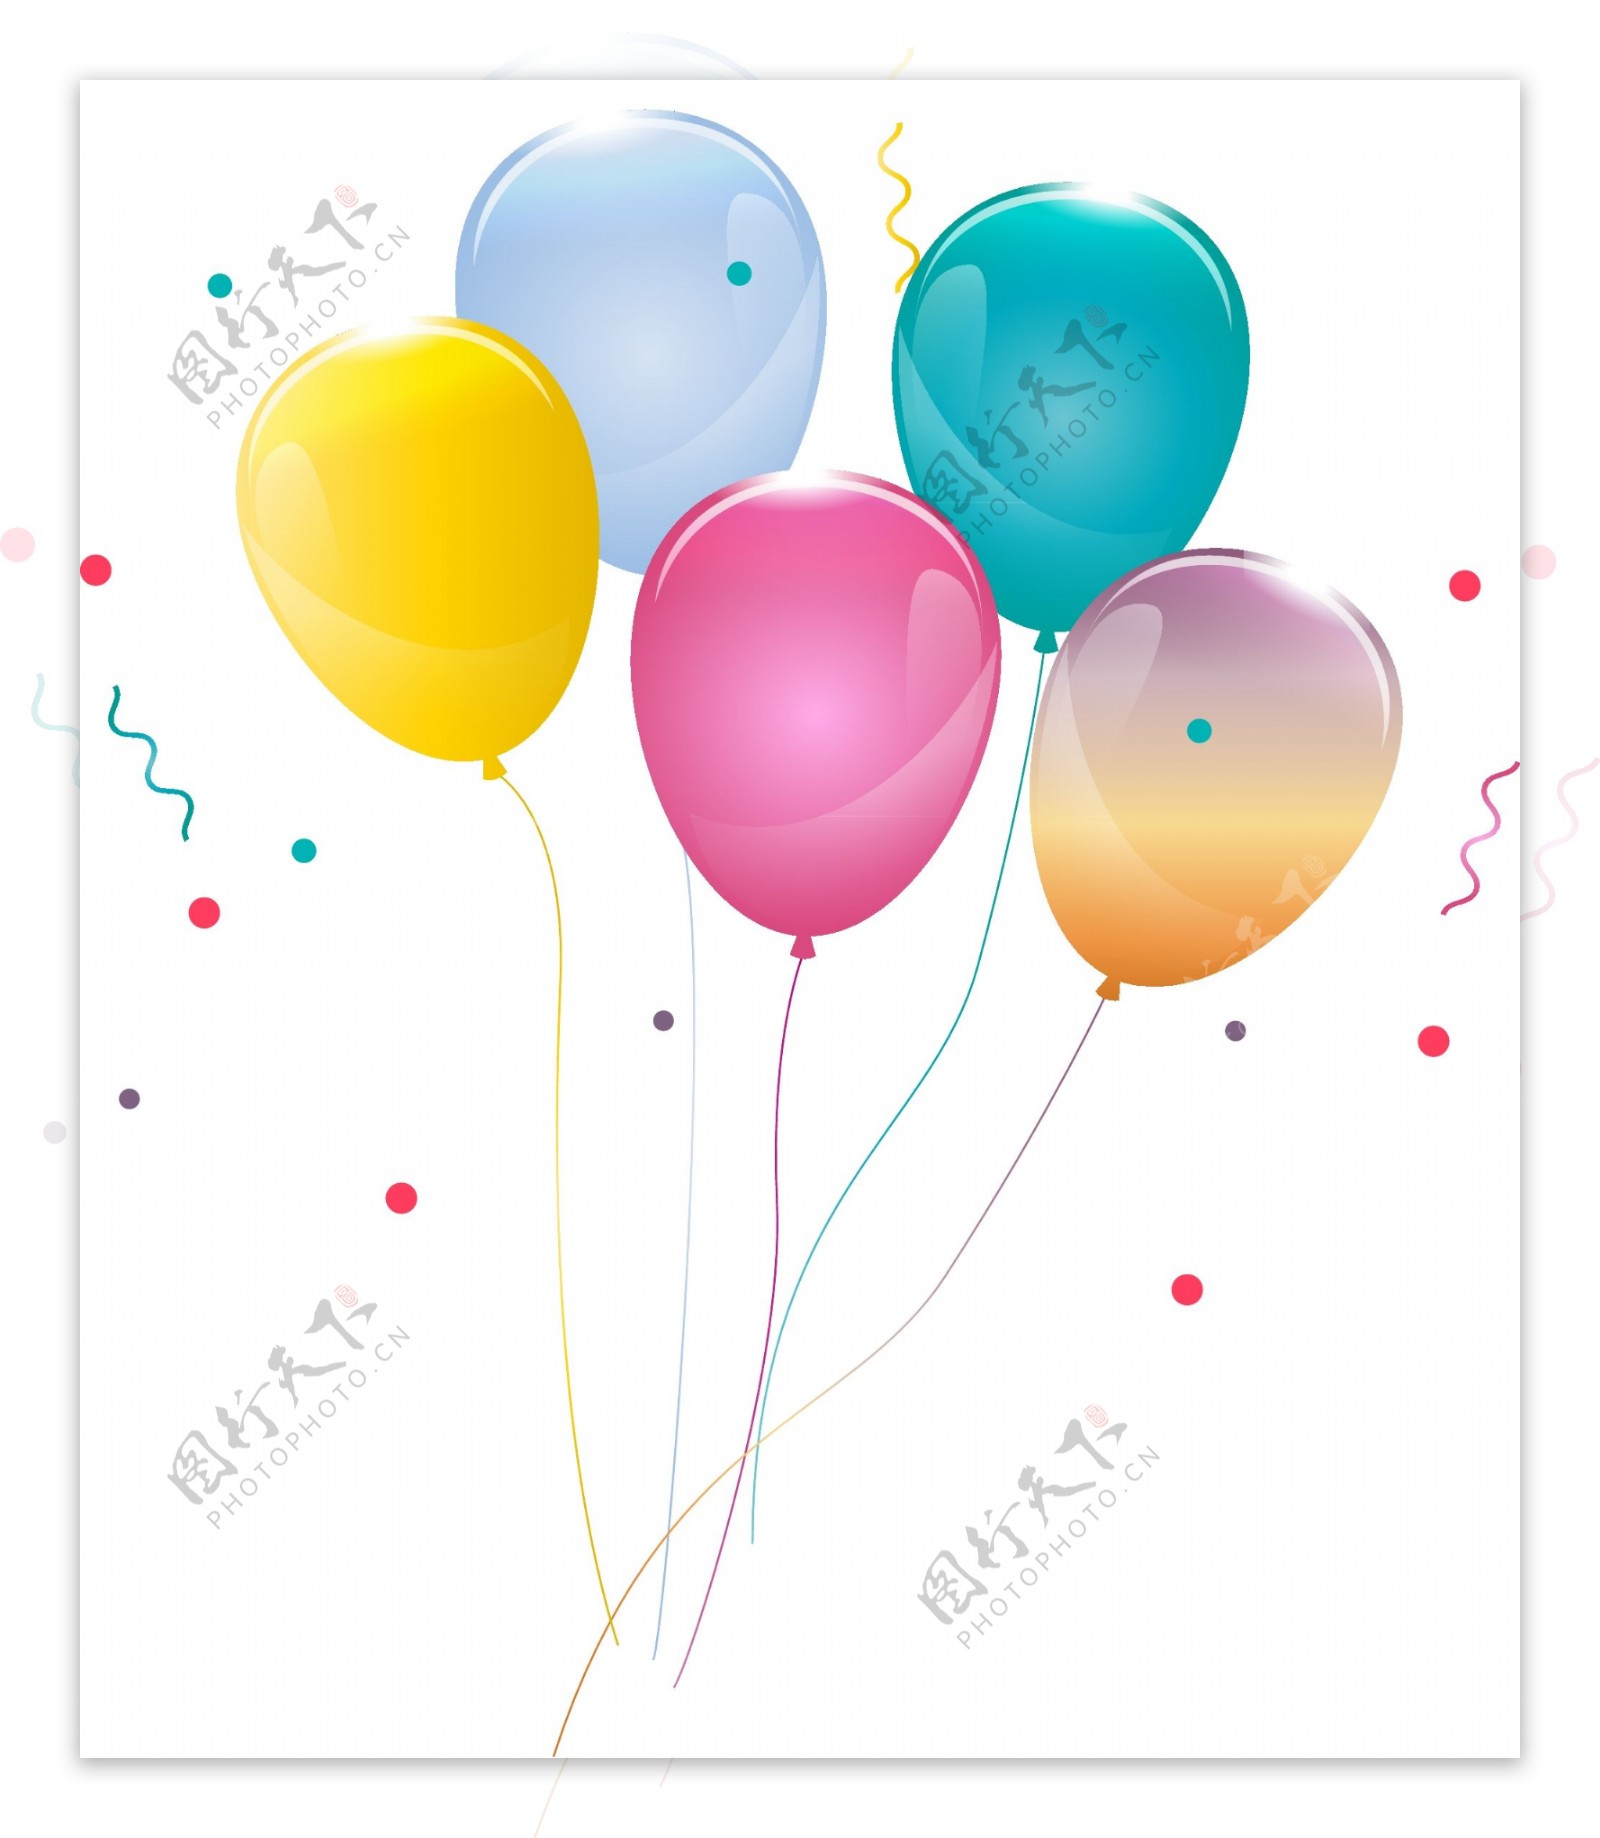 漂浮手绘彩色节日气球生日浪漫